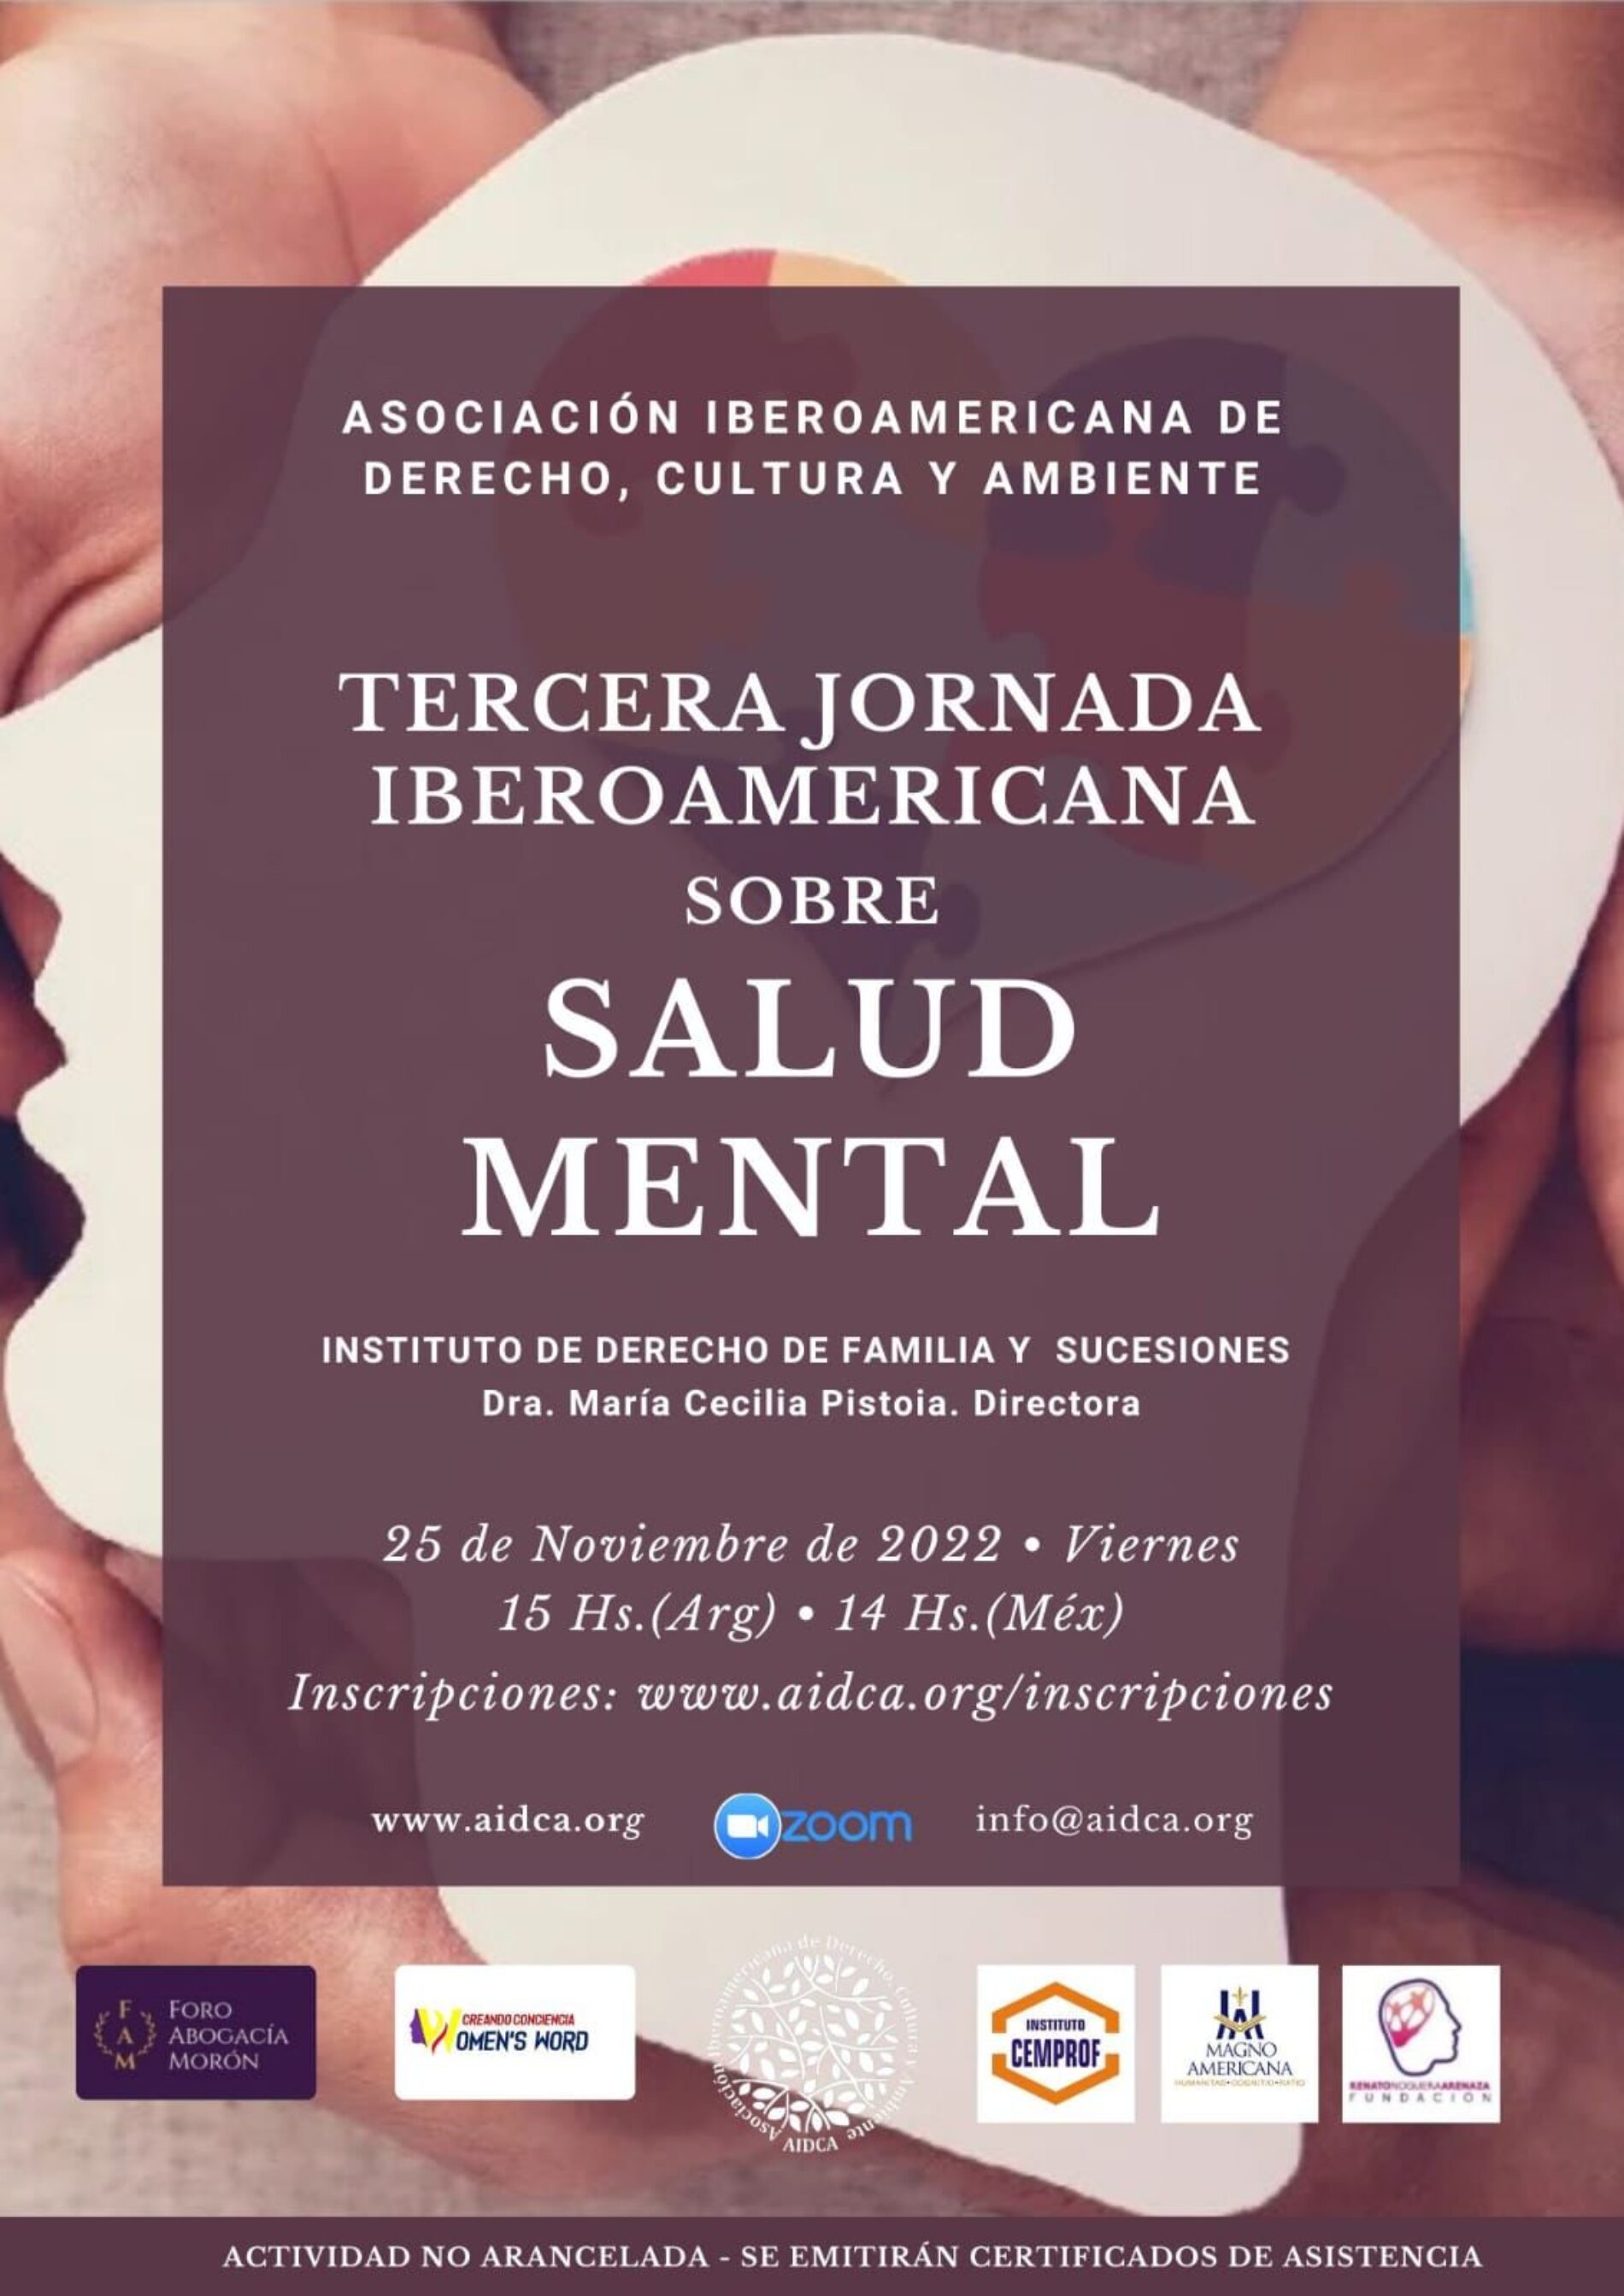 «Tercera Jornada Iberoamericana sobre Salud Mental»